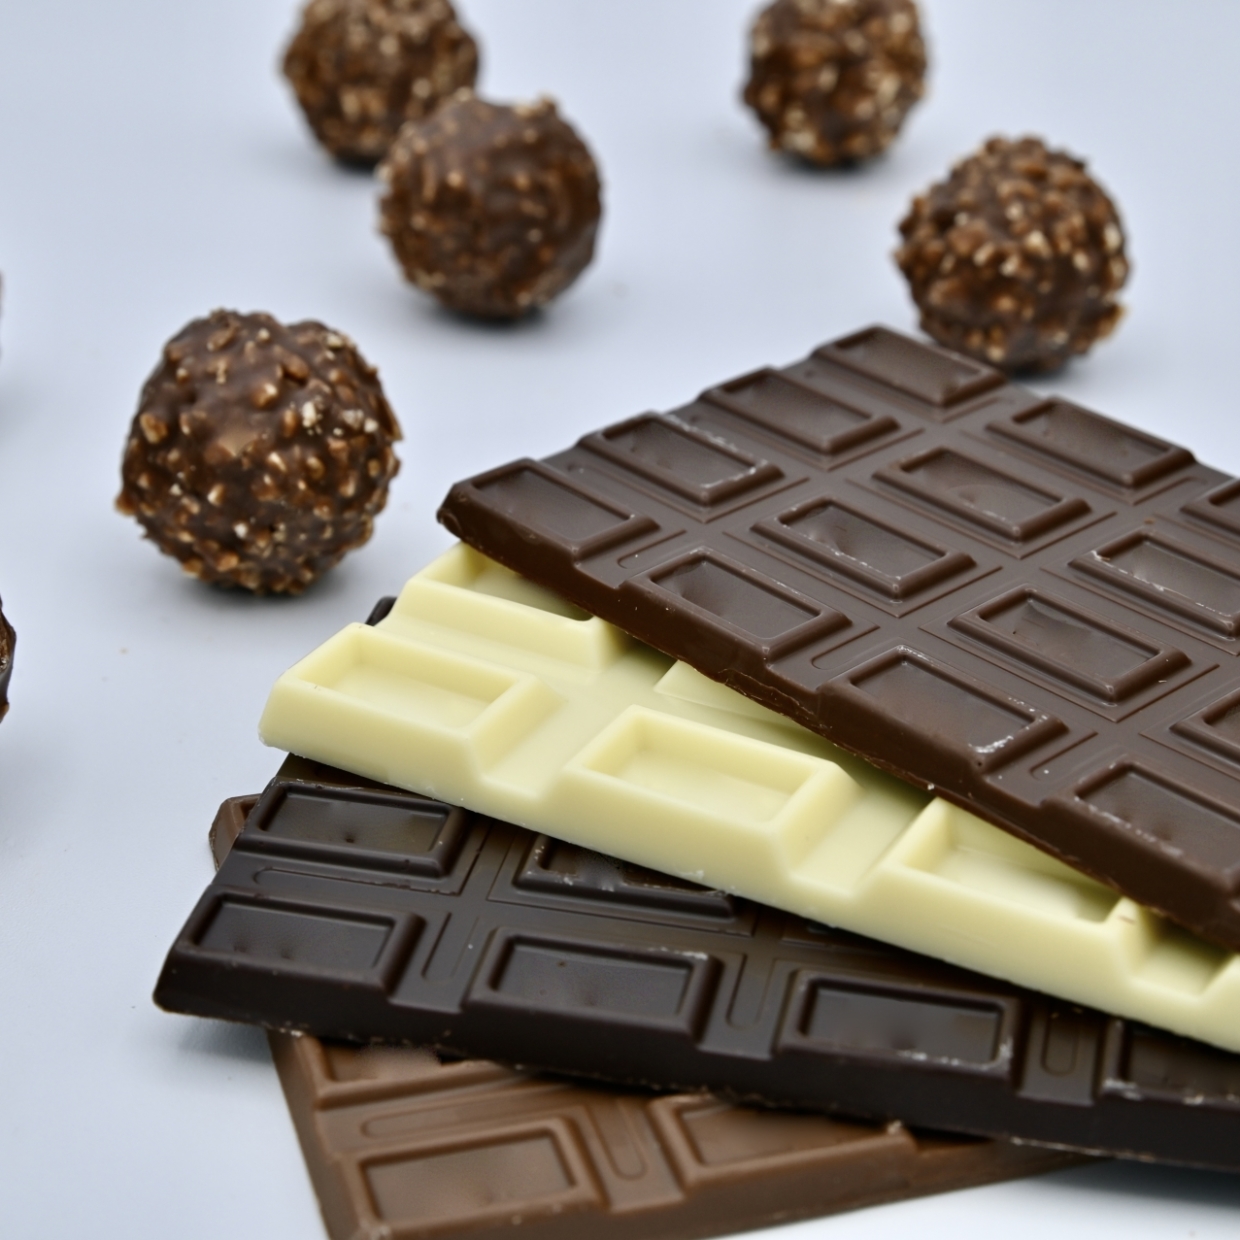  チョコレートのイメージ 